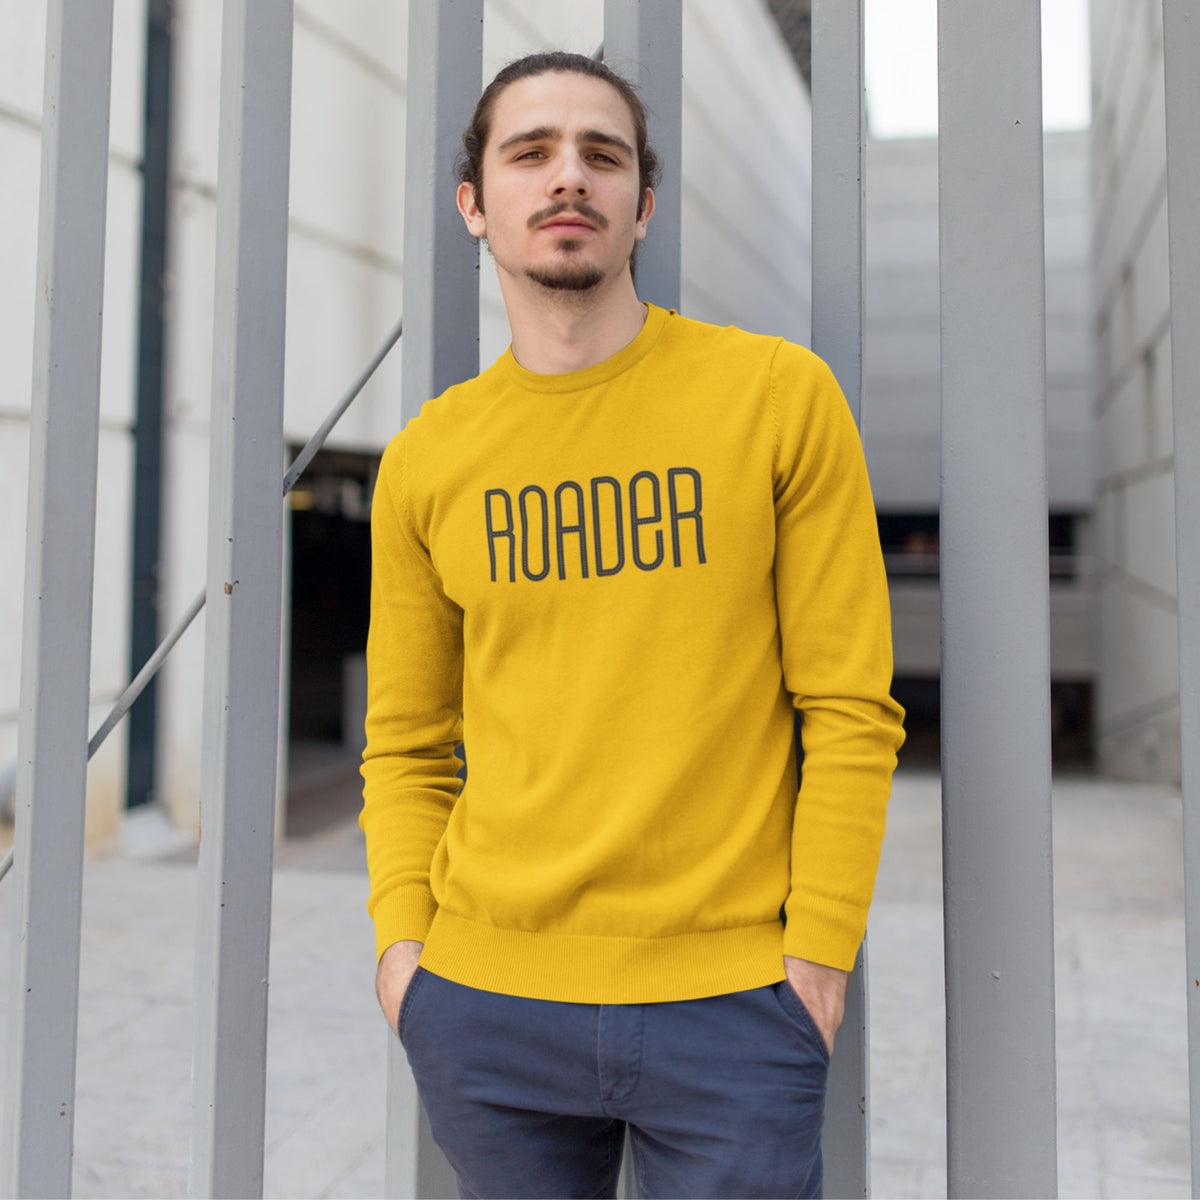 roader-cotton-printed-unisex-golden-yellow-sweatshirt-men-model-gogirgit-com